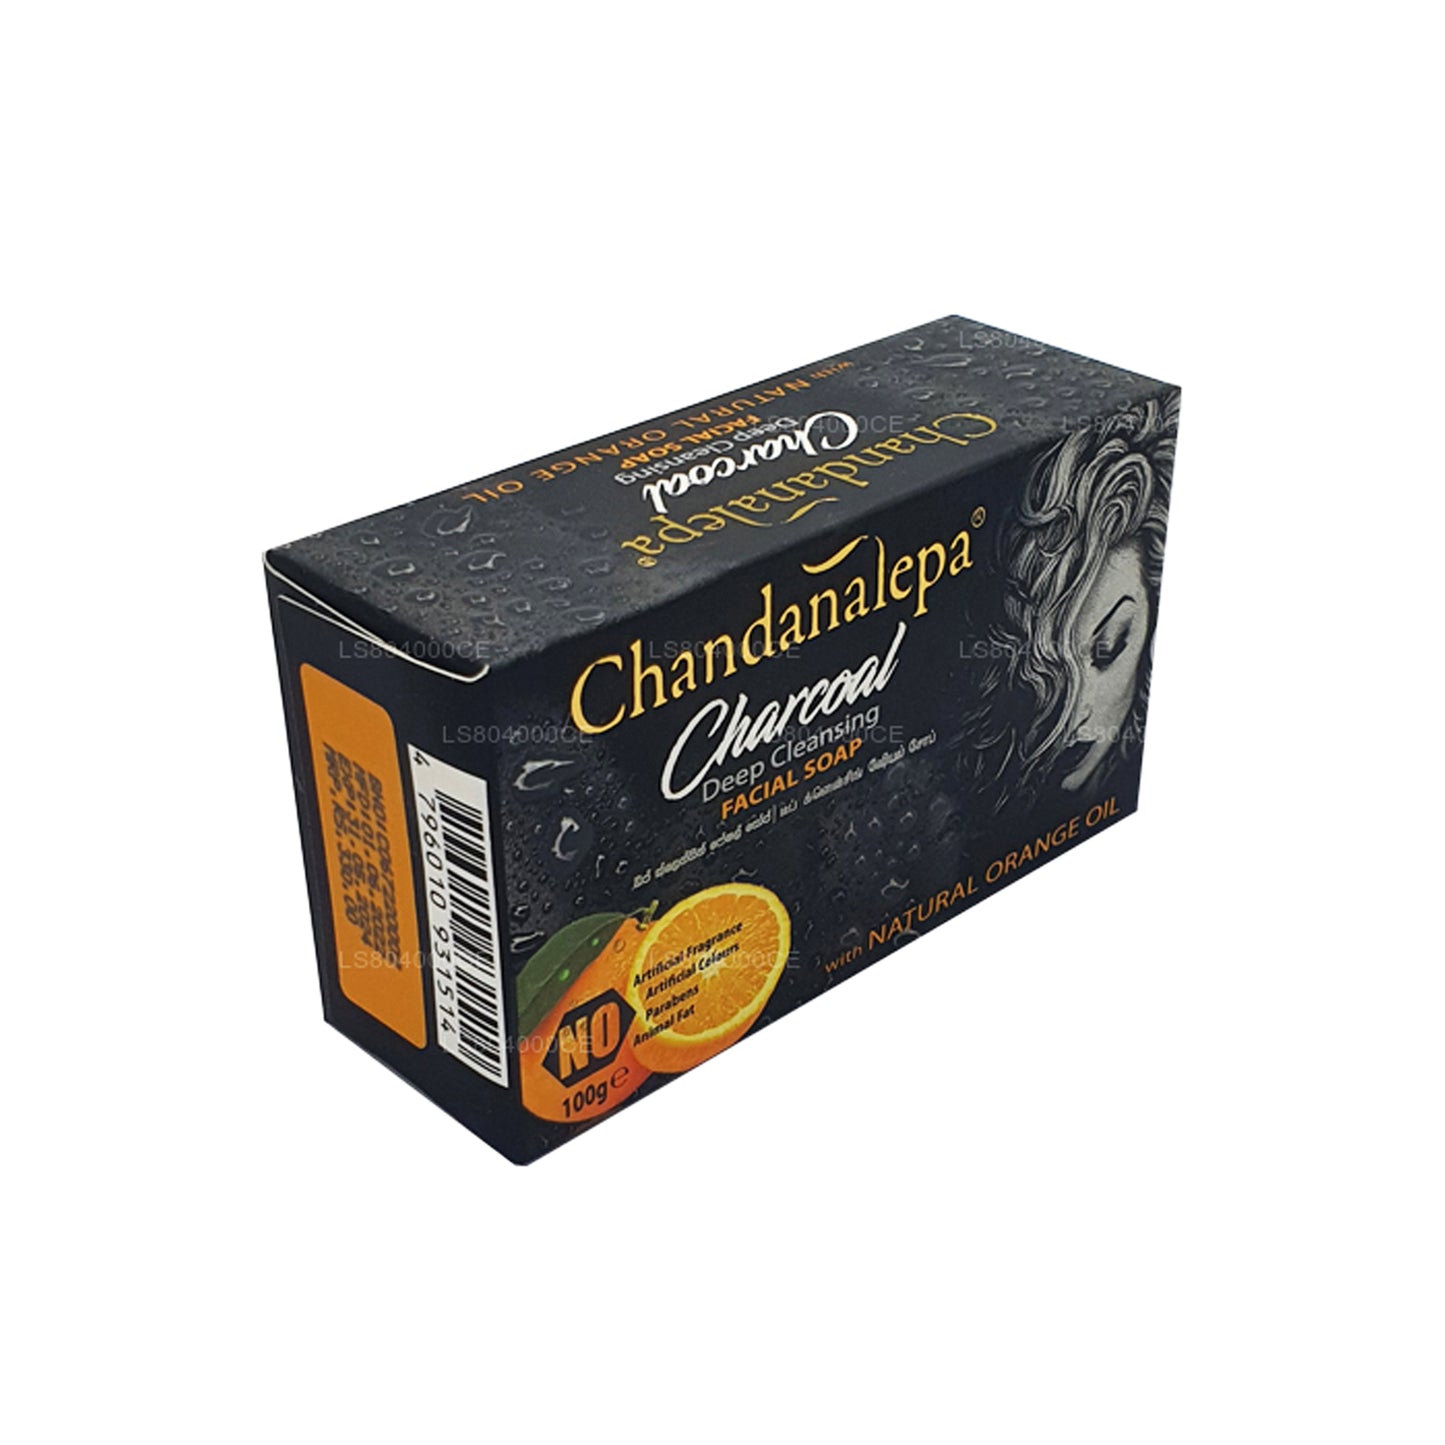 Chandanalepa Charcoal Głęboko oczyszczający baton (100g)